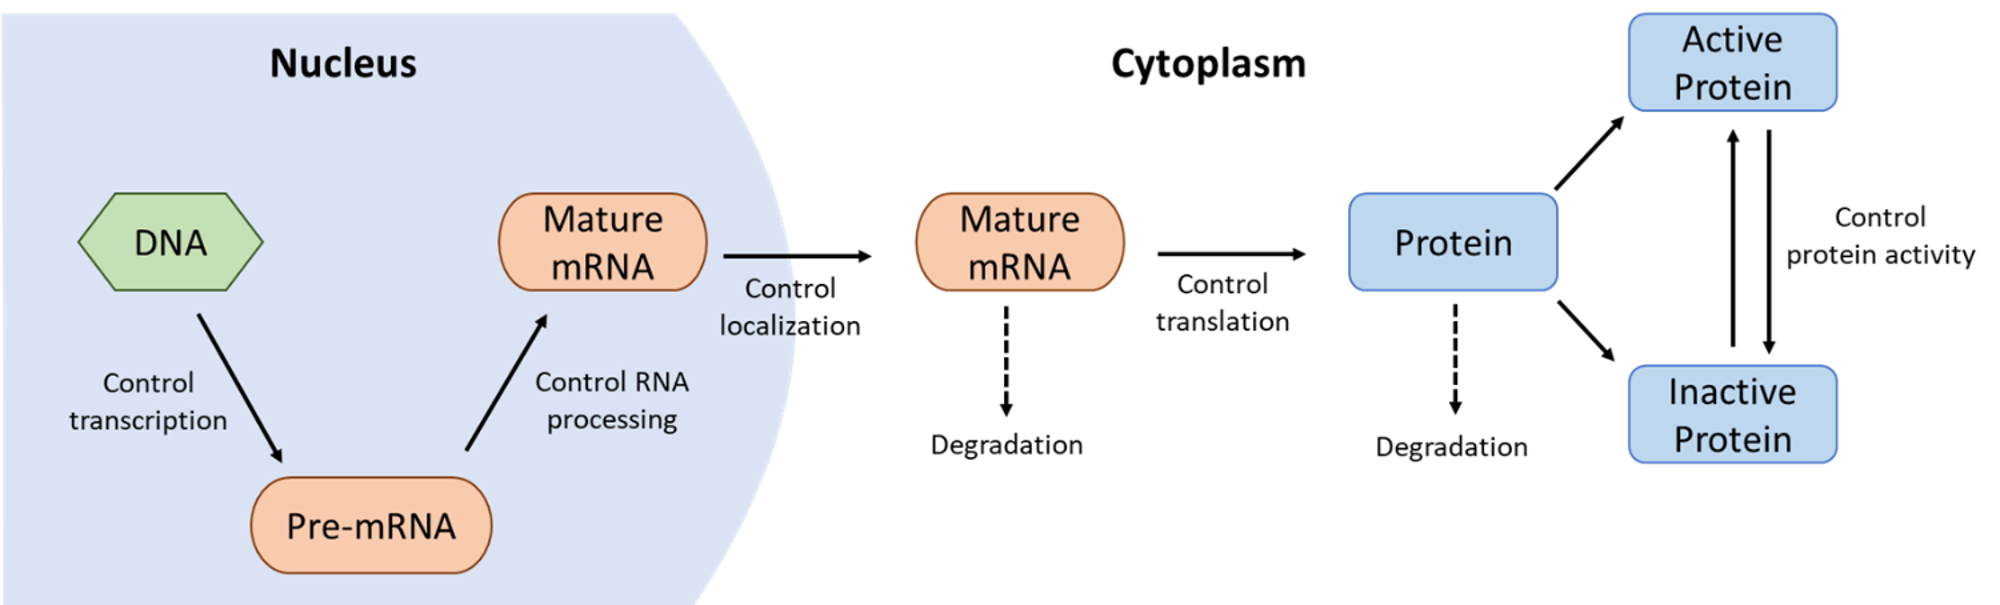 Gene/protein regulation flow chart